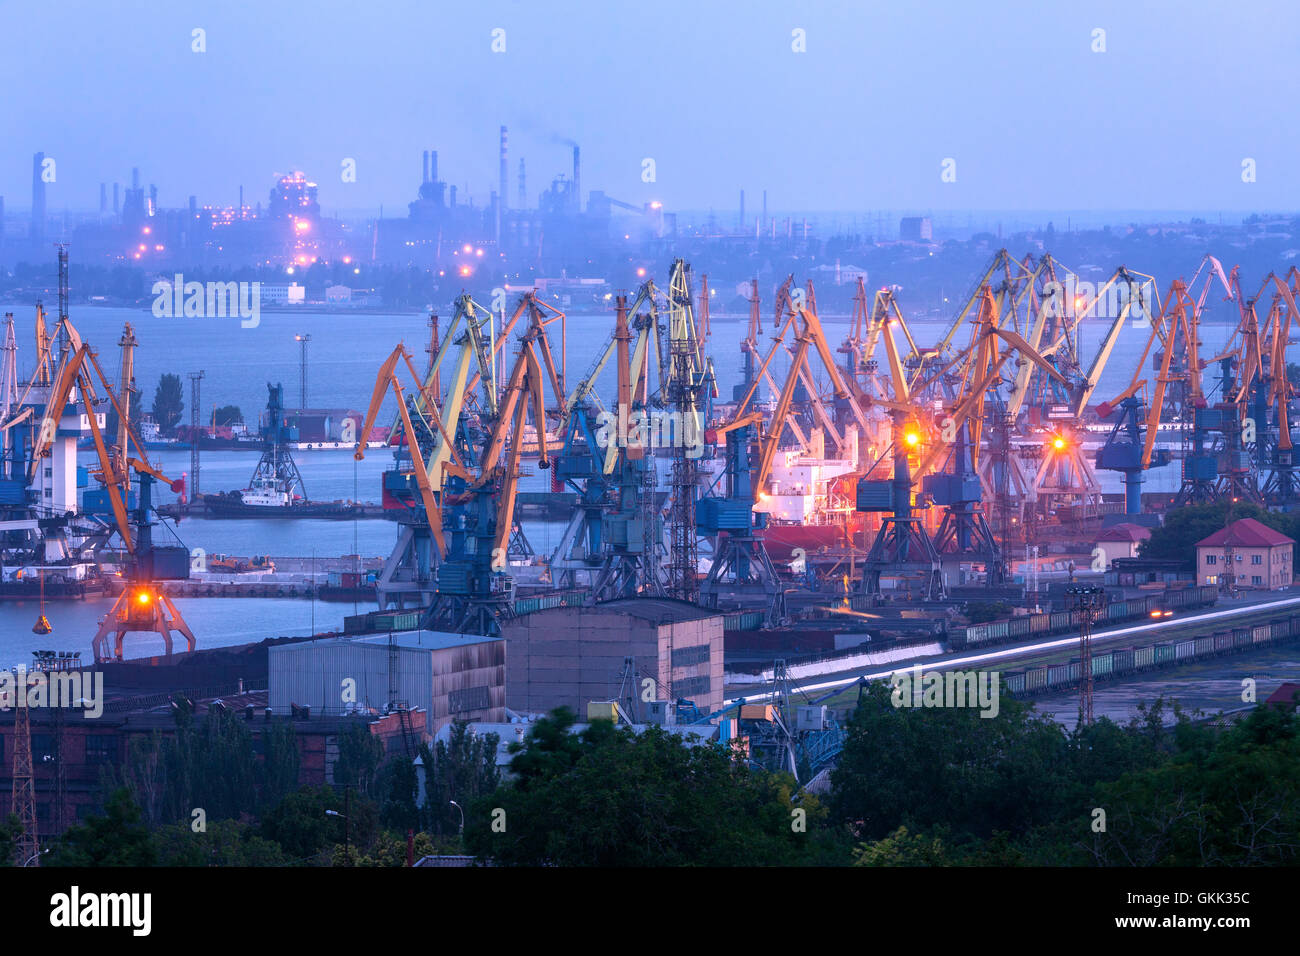 Kommerzielle Seehafen in der Nacht gegen arbeiten Stahlwerk in Mariupol, Ukraine. Industrielandschaft. Fracht-Frachtschiff Stockfoto